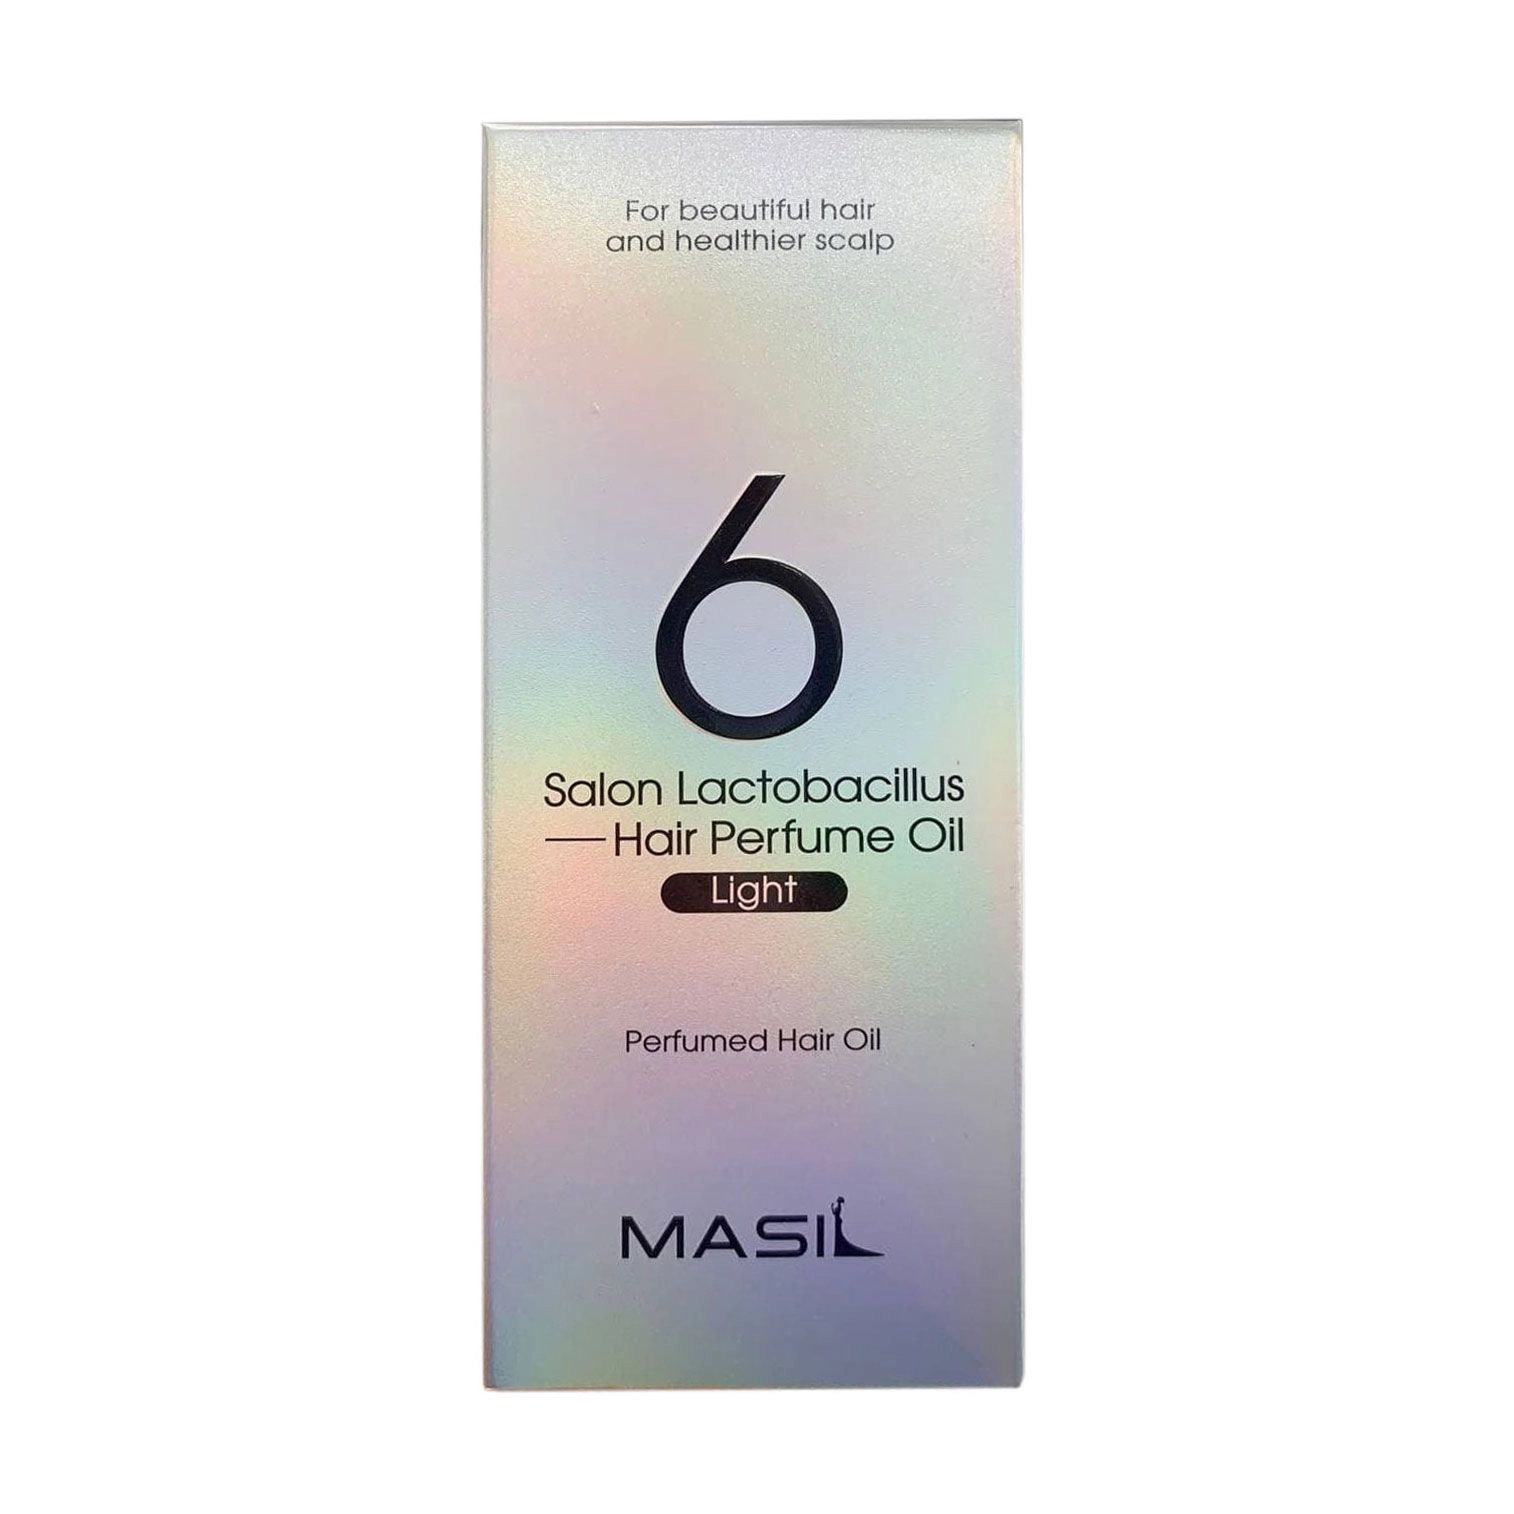 Легка парфумована олія для волосся з лактобактеріями для щоденного використання - Masil 6 Salon Lactobacillus Light Perfumed Hair Oil, 66 мл - фото N2